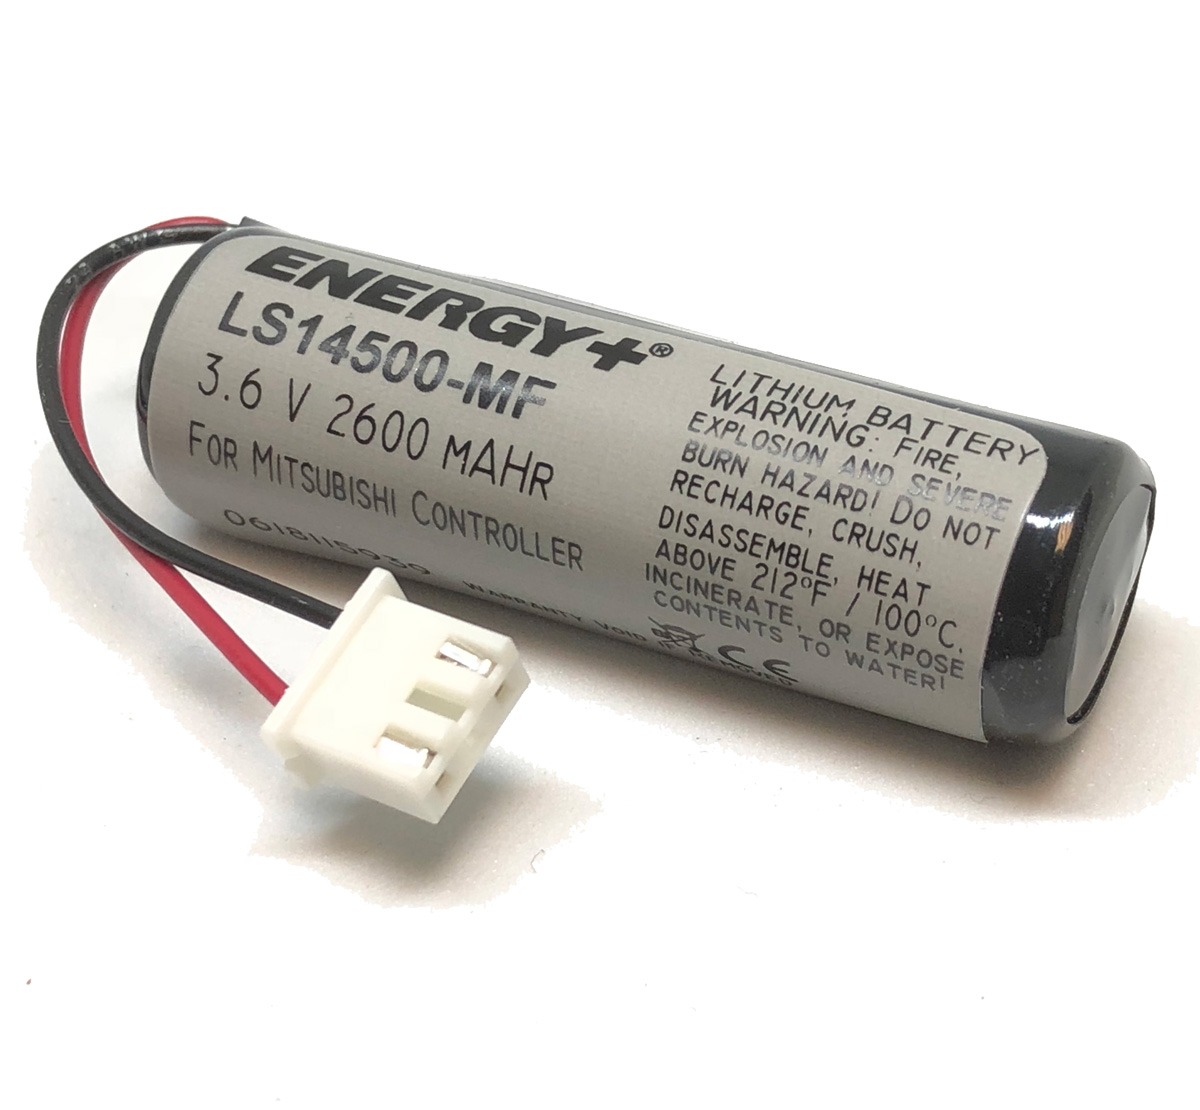 Mitsubishi PLC Battery F2-40BL LS14500-MF